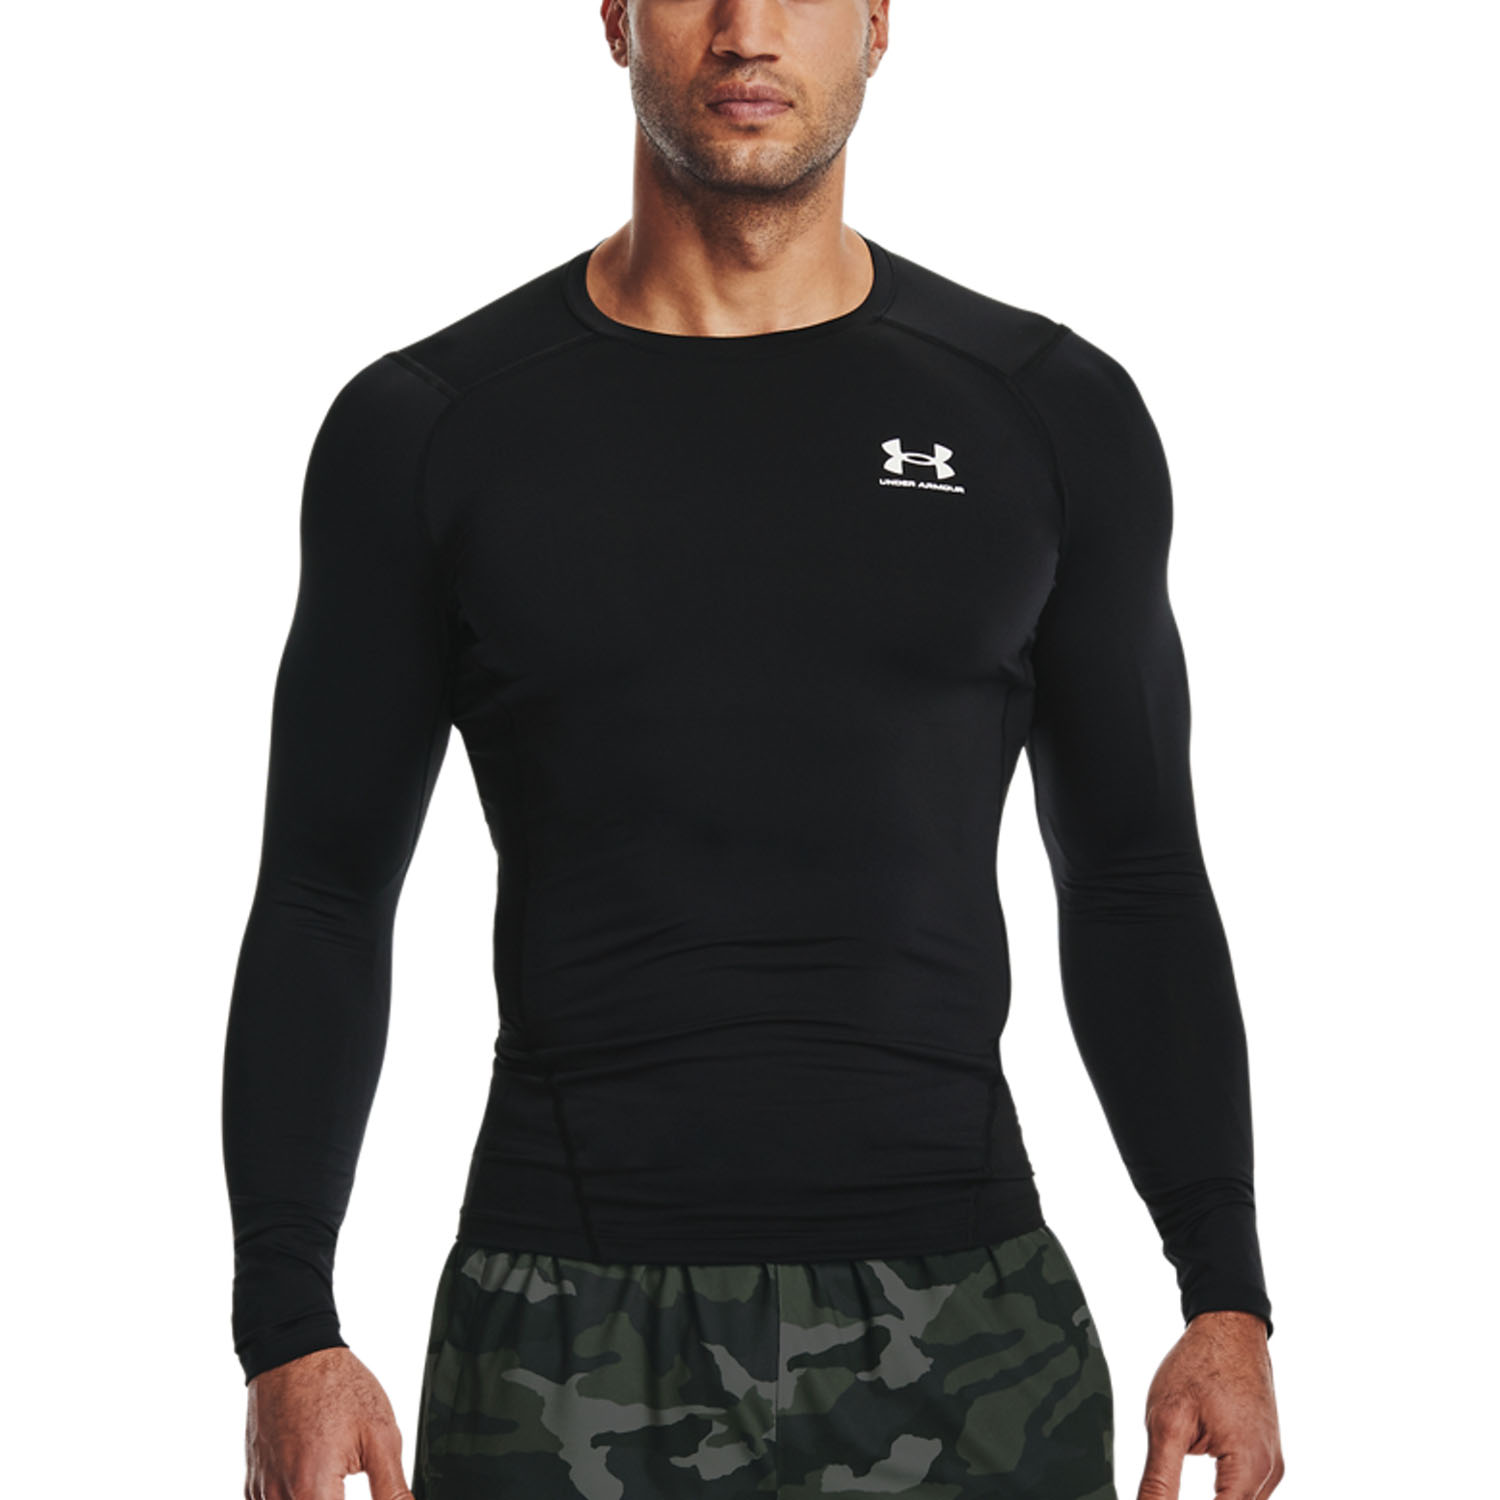 Torpe Reducción de precios ducha Under Armour HeatGear Compression Camisa de Tenis Hombre - Black